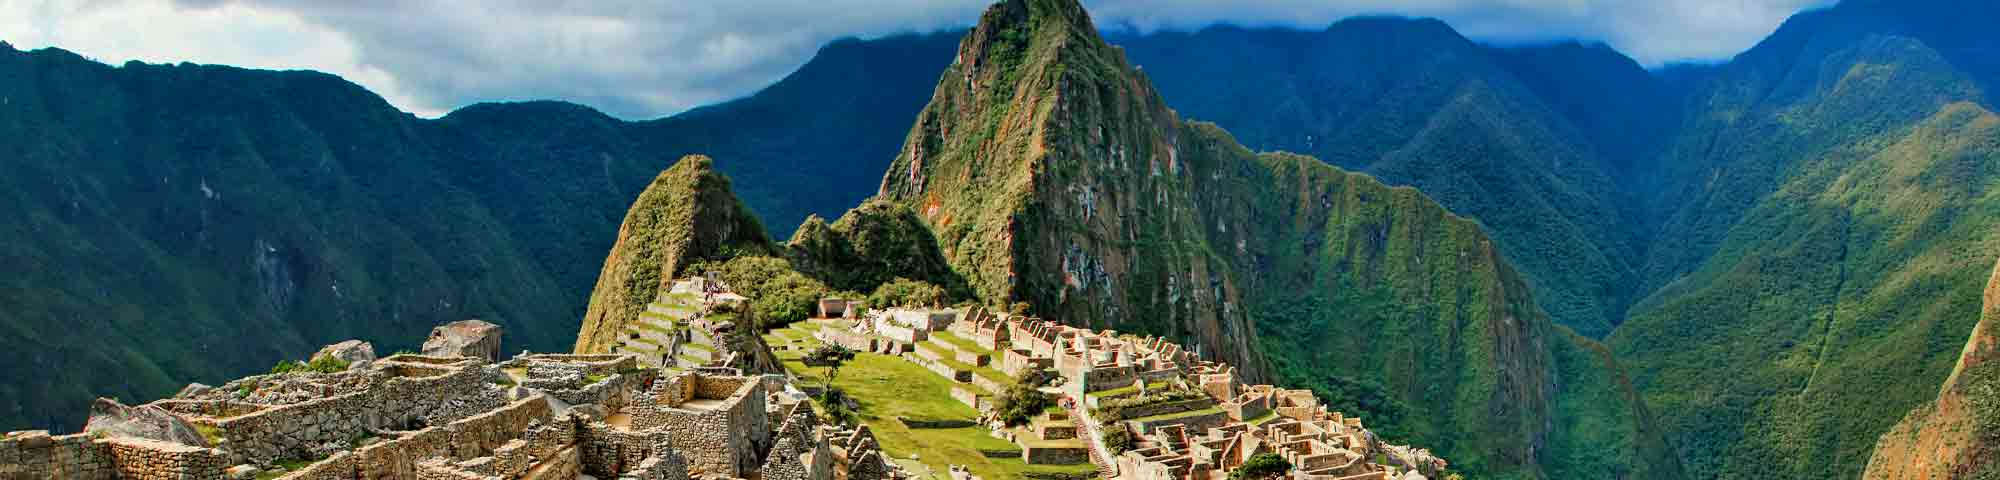 Cusco: Denuncian que operadores turísticos "engañan" al ofrecer boletos de ingreso a Machupicchu